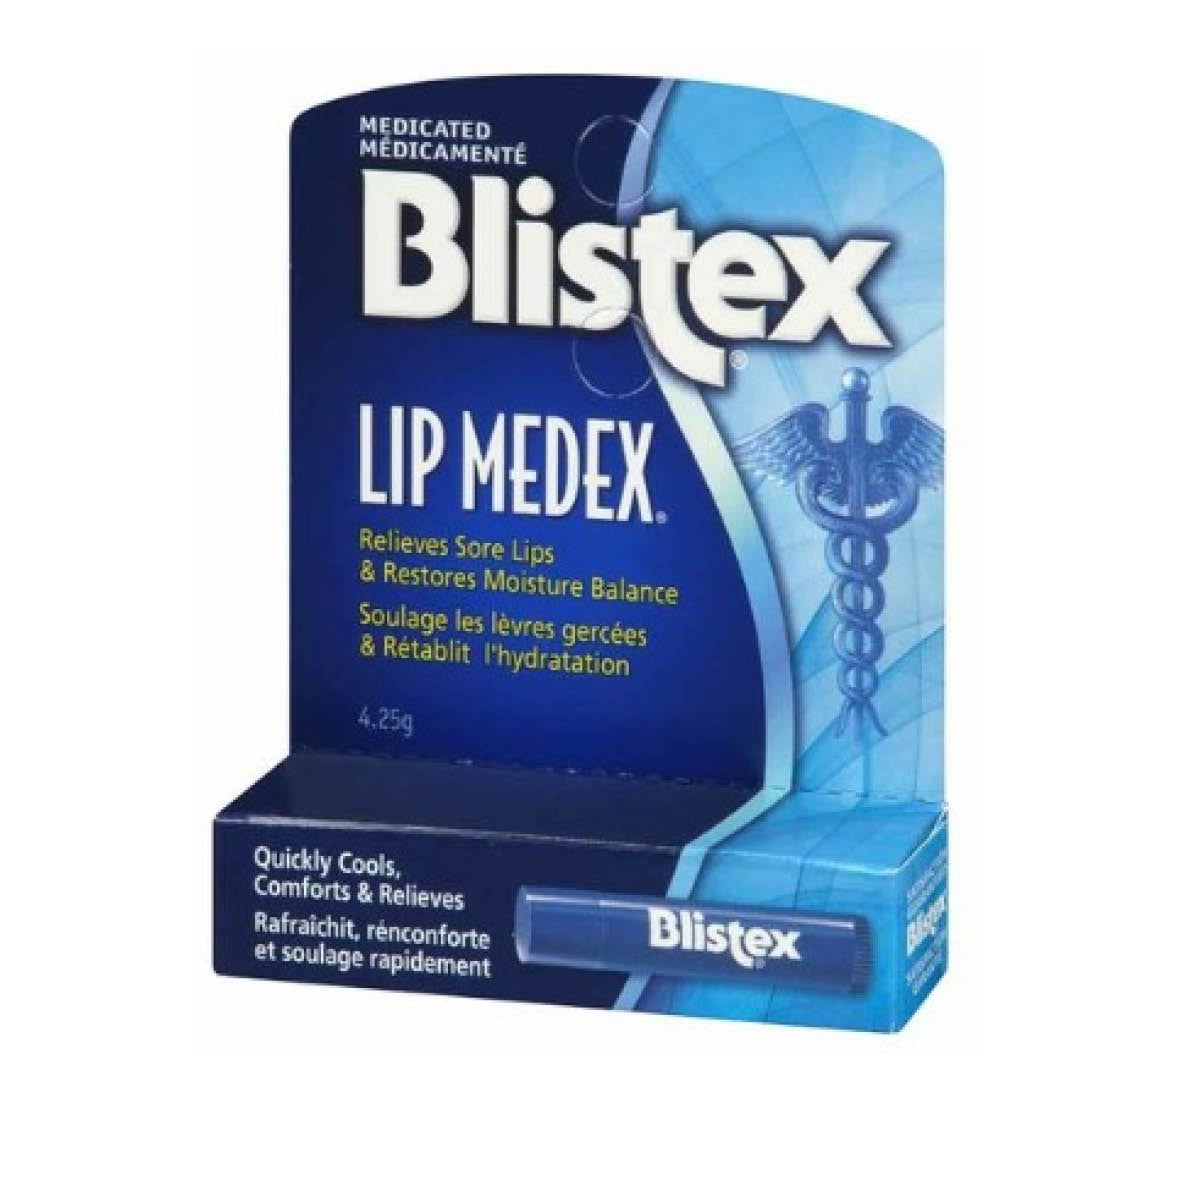 Blistex Lip Medex Lip Balm